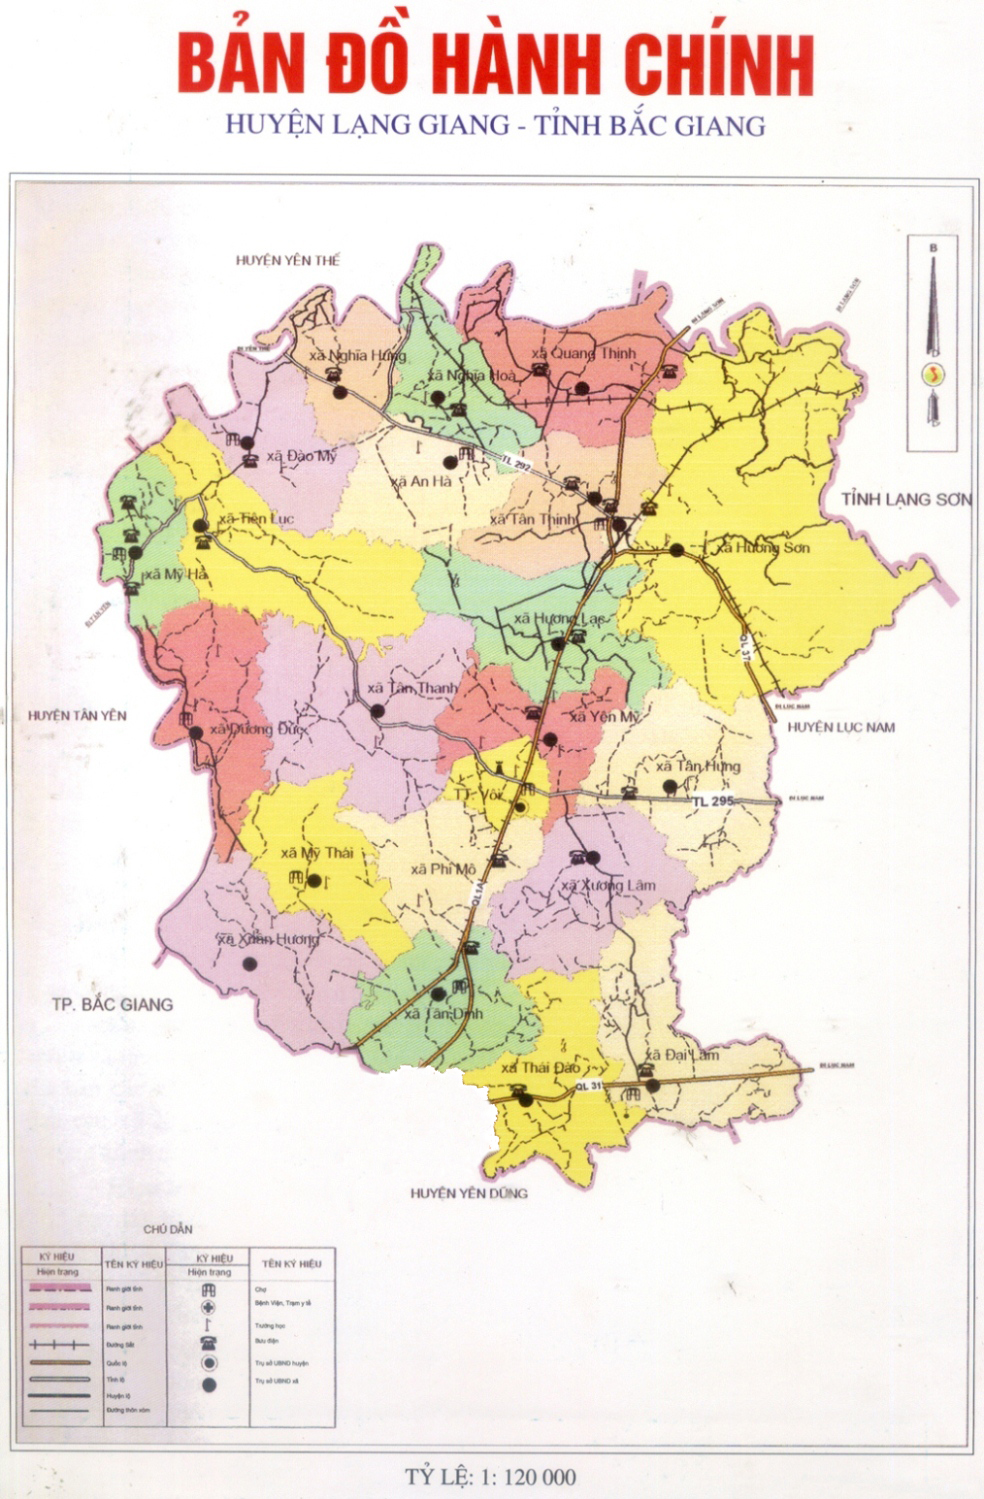 Bản đồ hành chính huyện Lạng Giang sẽ giúp bạn dễ dàng tìm kiếm các địa điểm và dịch vụ quan trọng trong khu vực này. Với sự phát triển nhanh của đại đô thị phía Bắc, Lạng Giang đang trở thành một trong những huyện quan trọng nhất của tỉnh Bắc Giang.